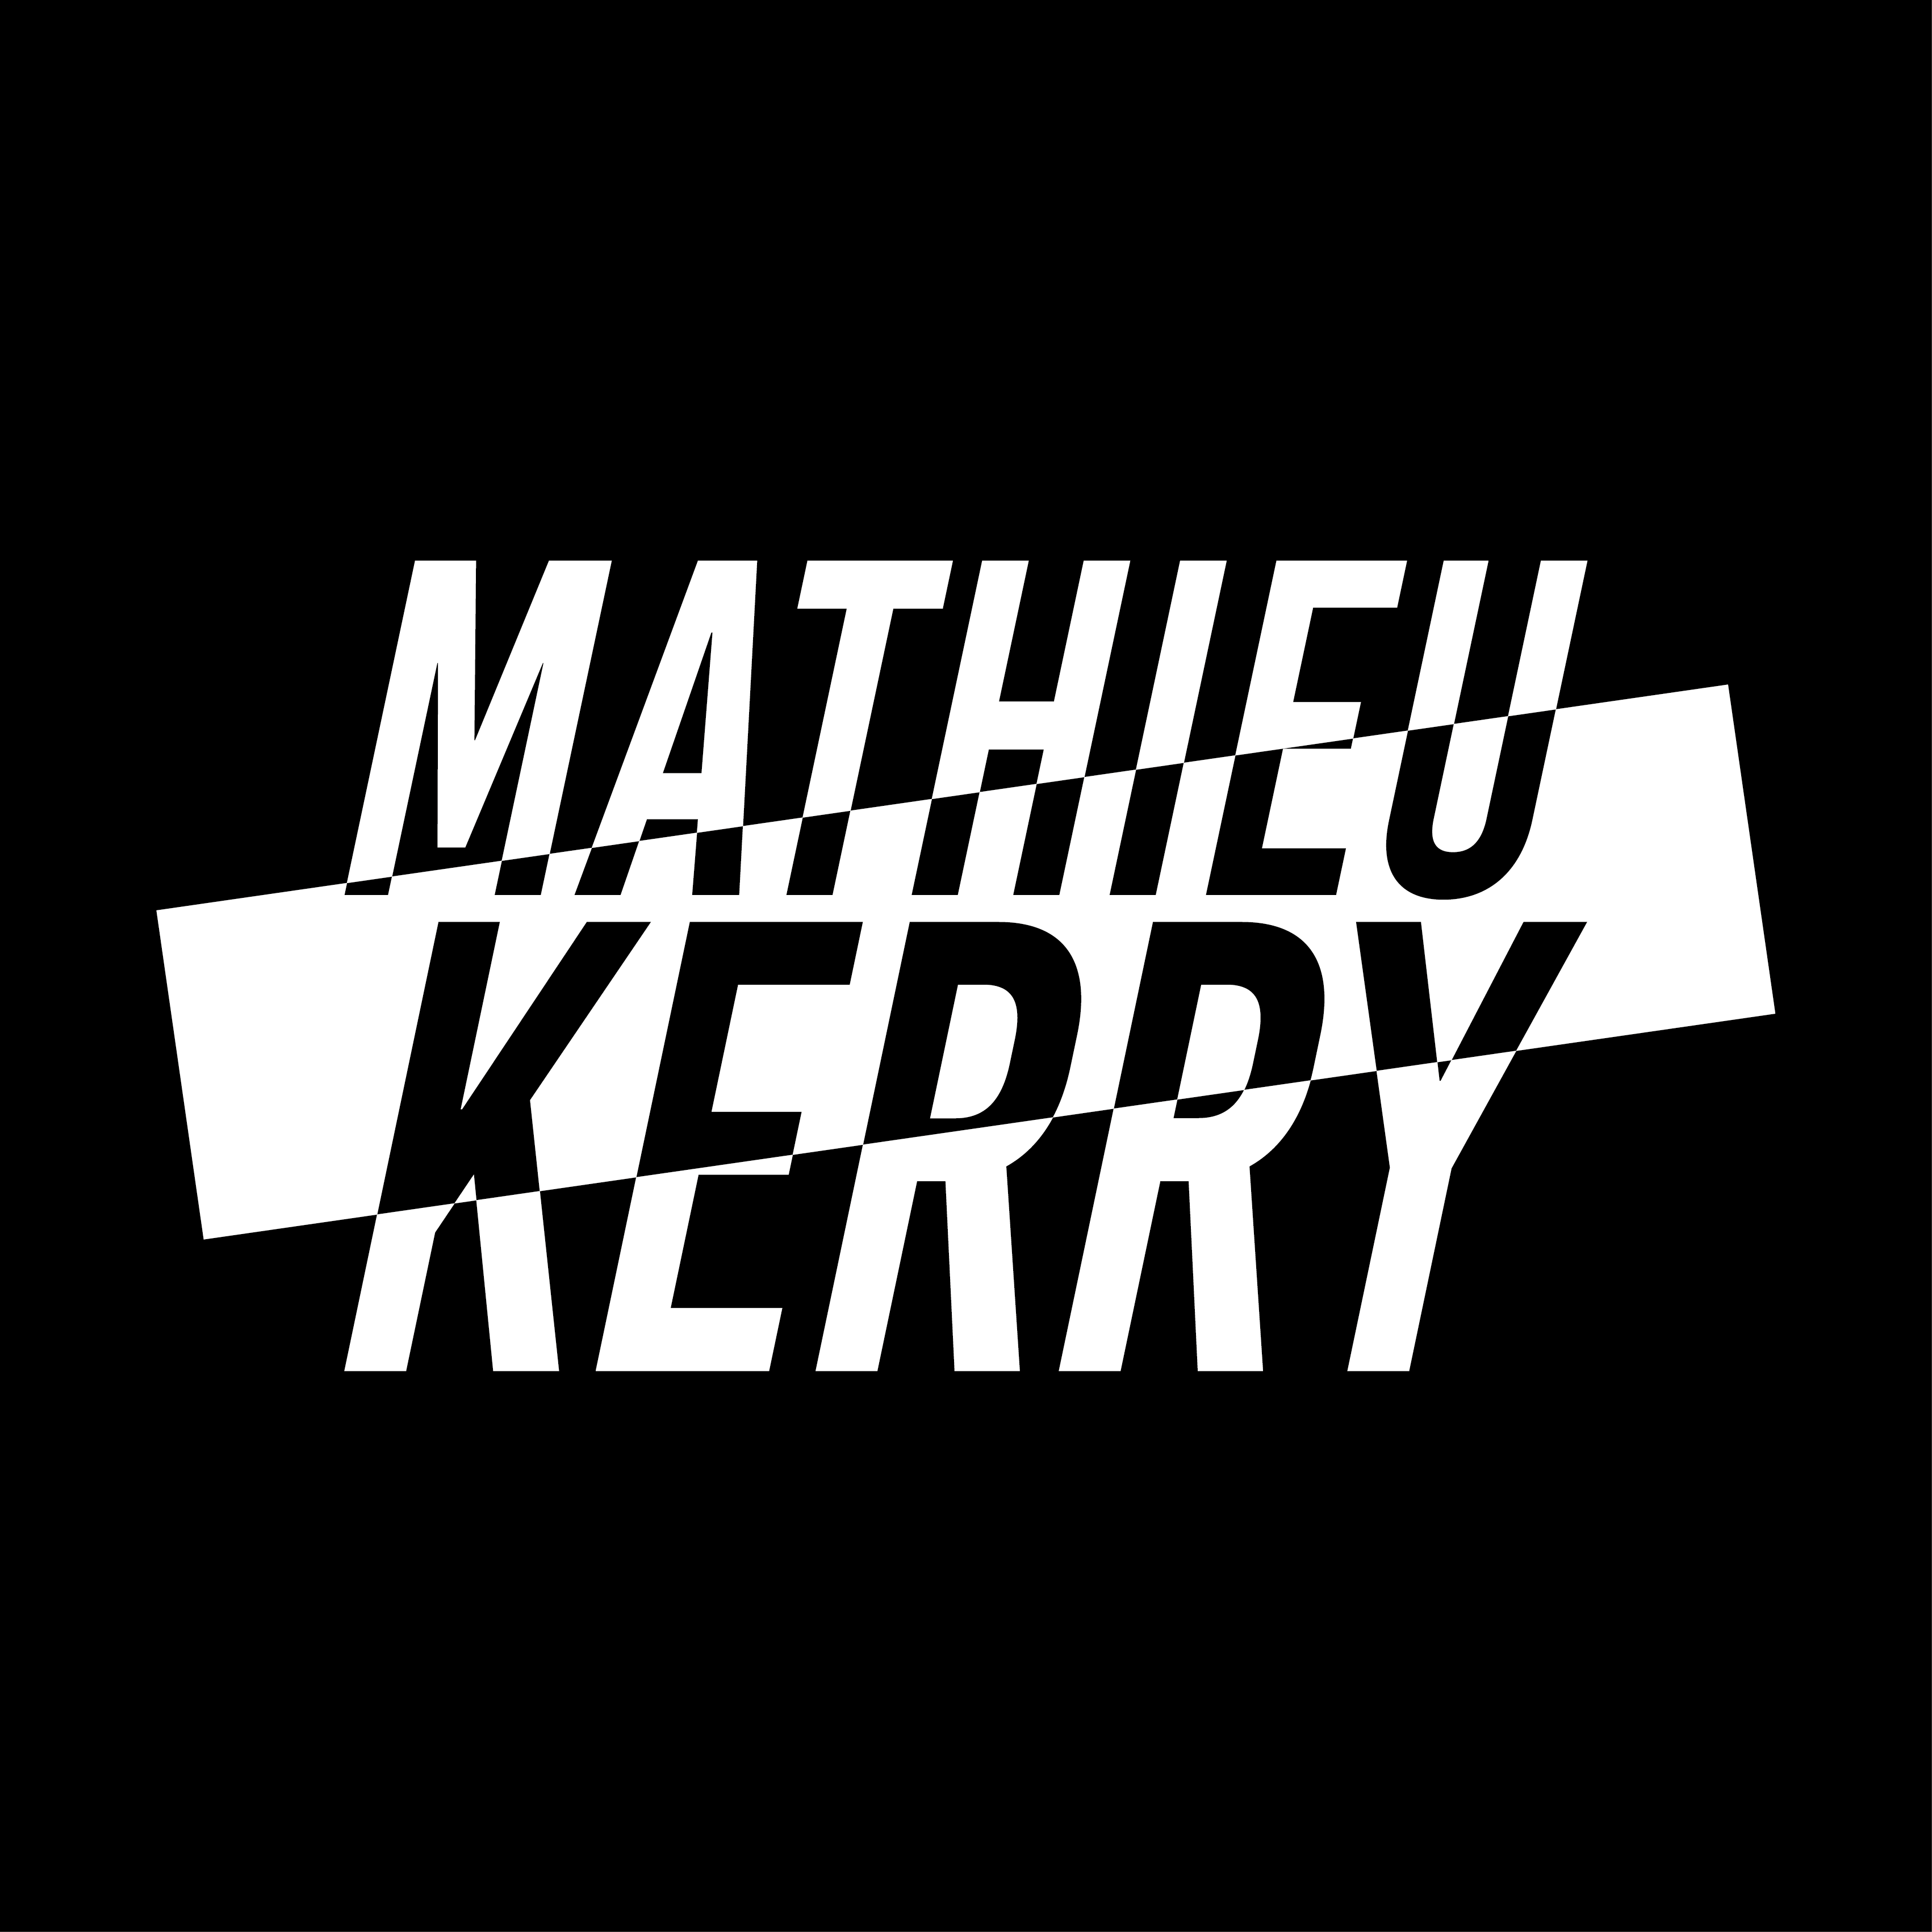 MATHIEU KERRY